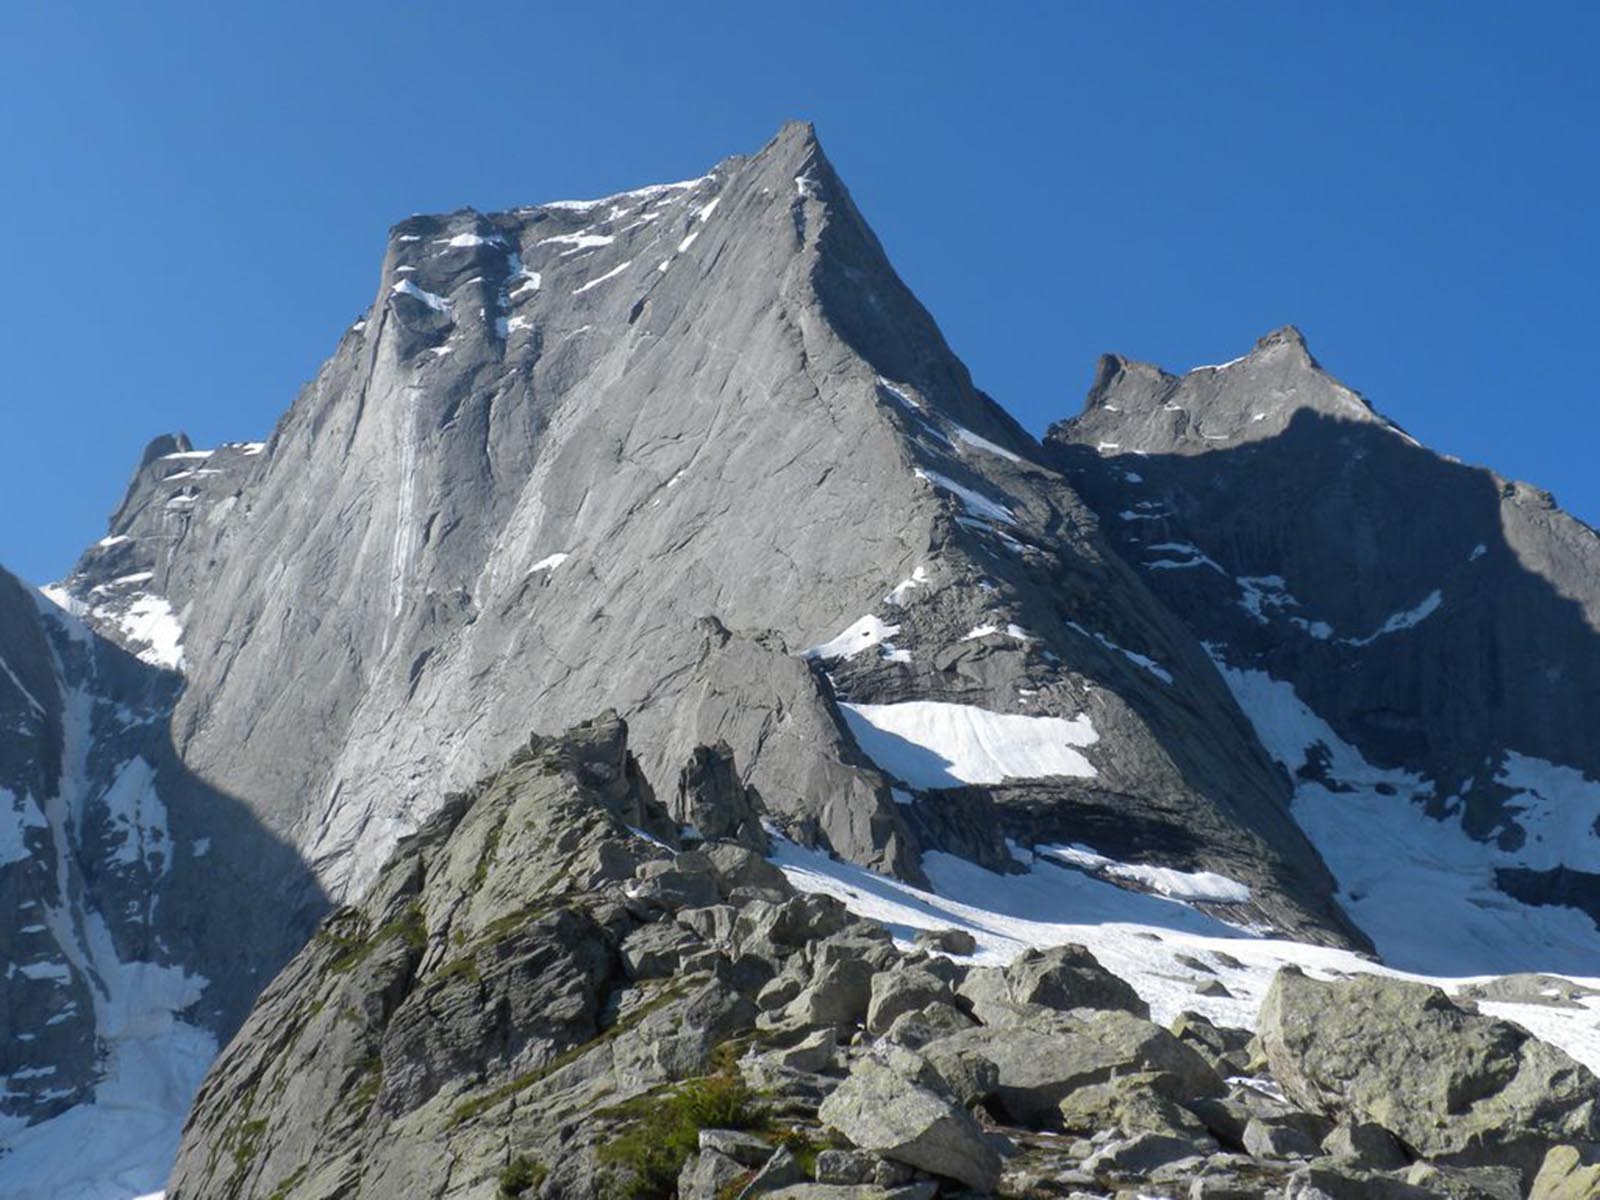 E' disponibile il Programma Alpinismo Giovanile 2020